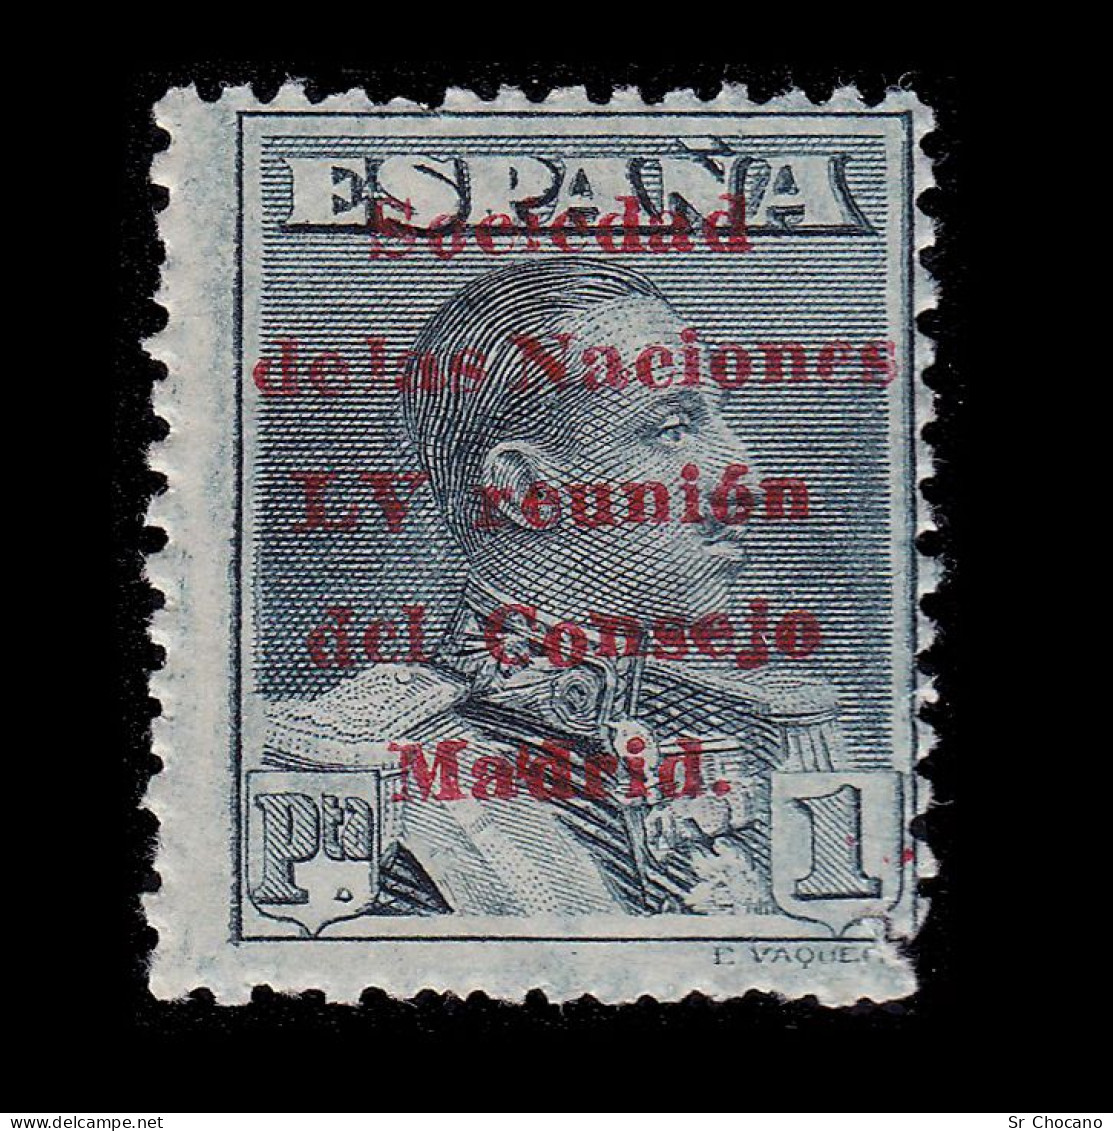 Alfonso XIII.1929.Sociedad Naciones.1p.MNH.Edifil 465 - Unused Stamps